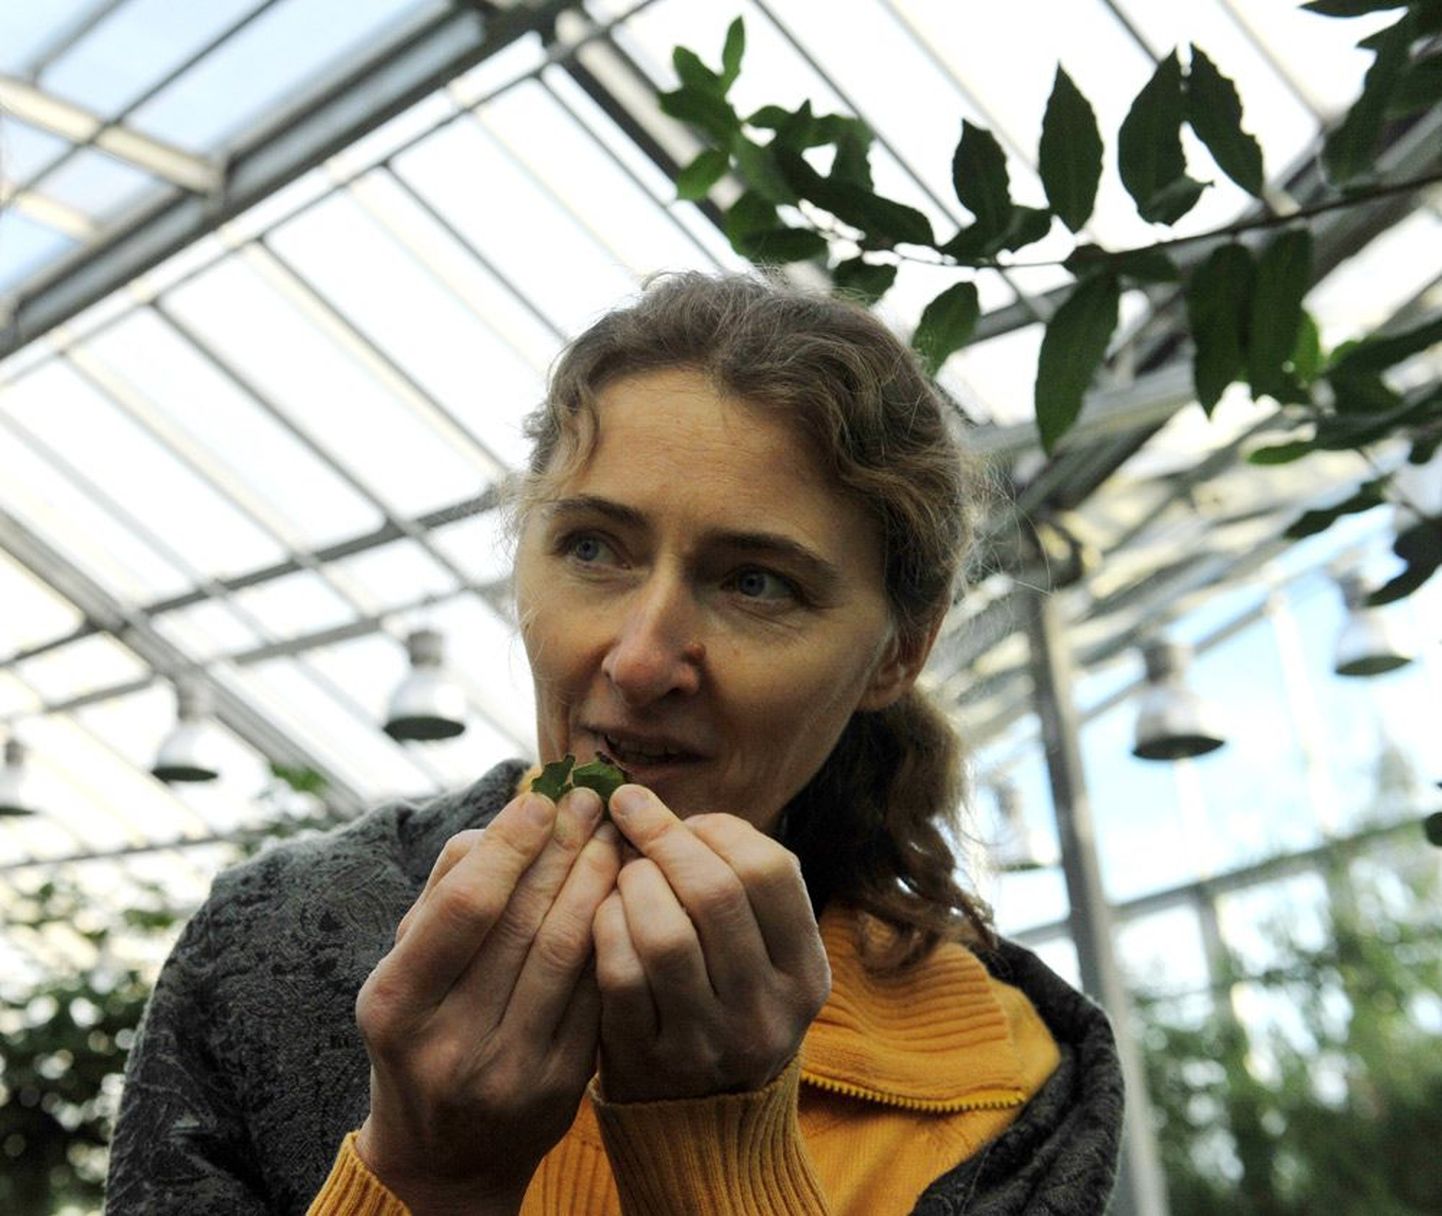 Tallinna botaanikaaia maagiliste taimede näituse ühe kuraatori Krista Kauri sõnul eraldub loorberile iseloomulik aroom värske loorberipuu lehest siis, kui seda veidi murda või muljuda.